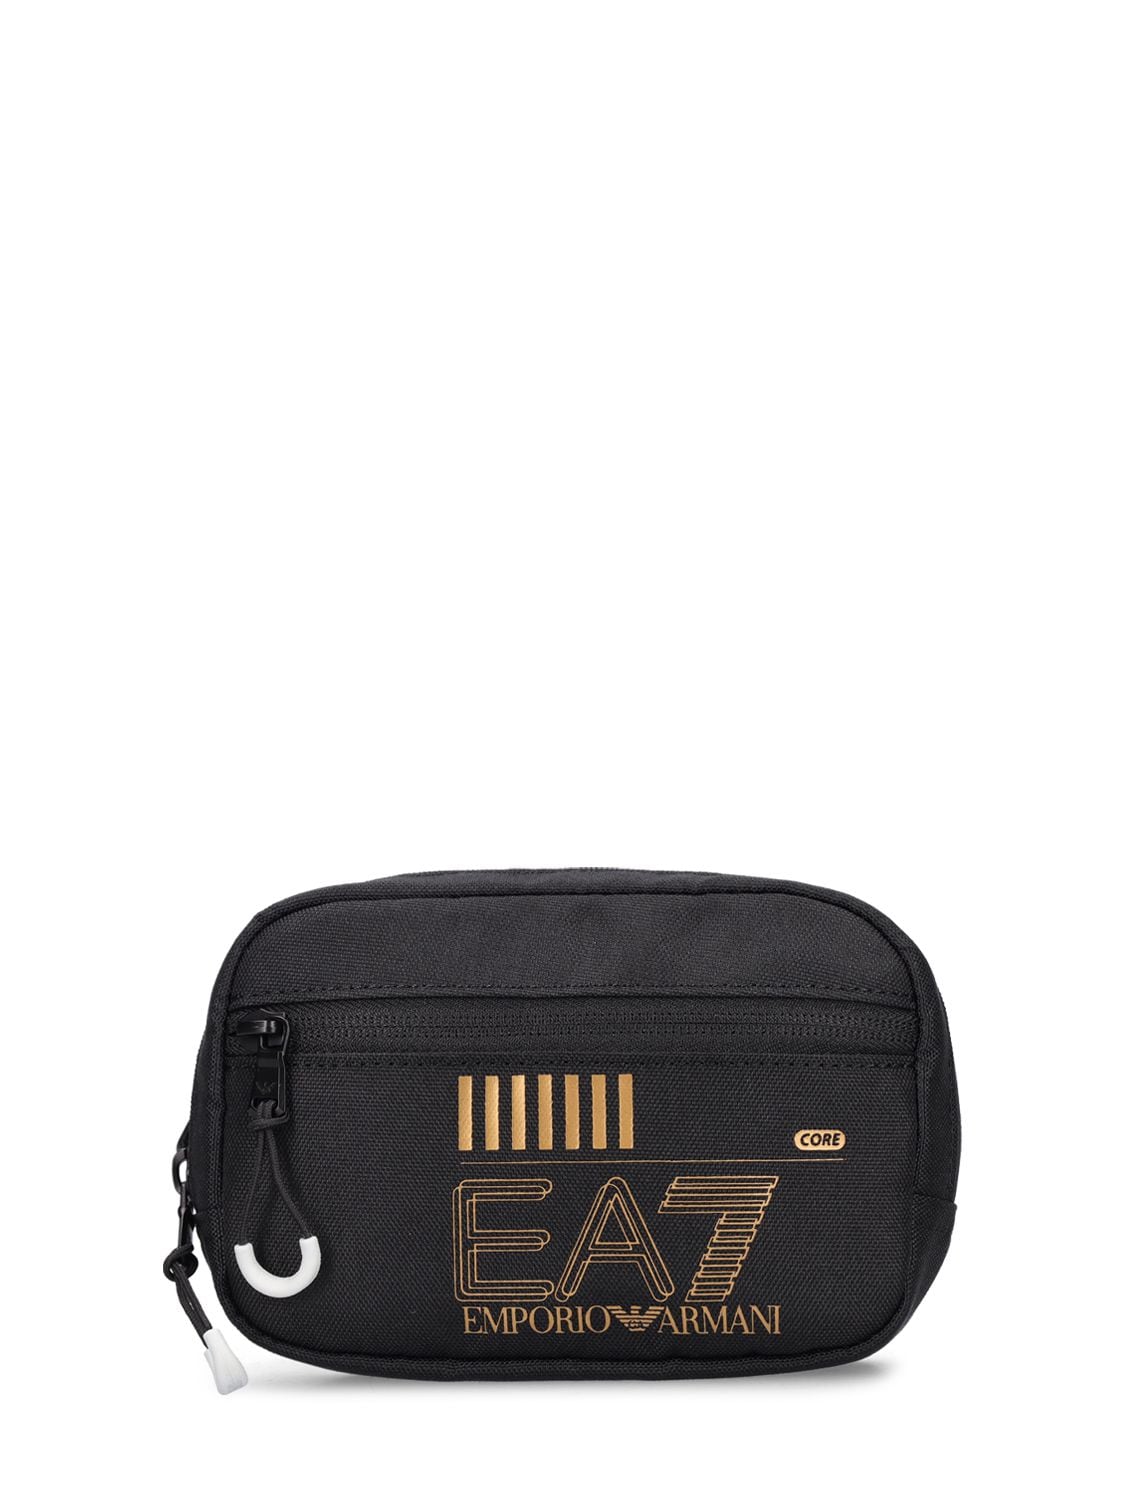 Core Identity Belt Bag - EA7 EMPORIO ARMANI - Modalova